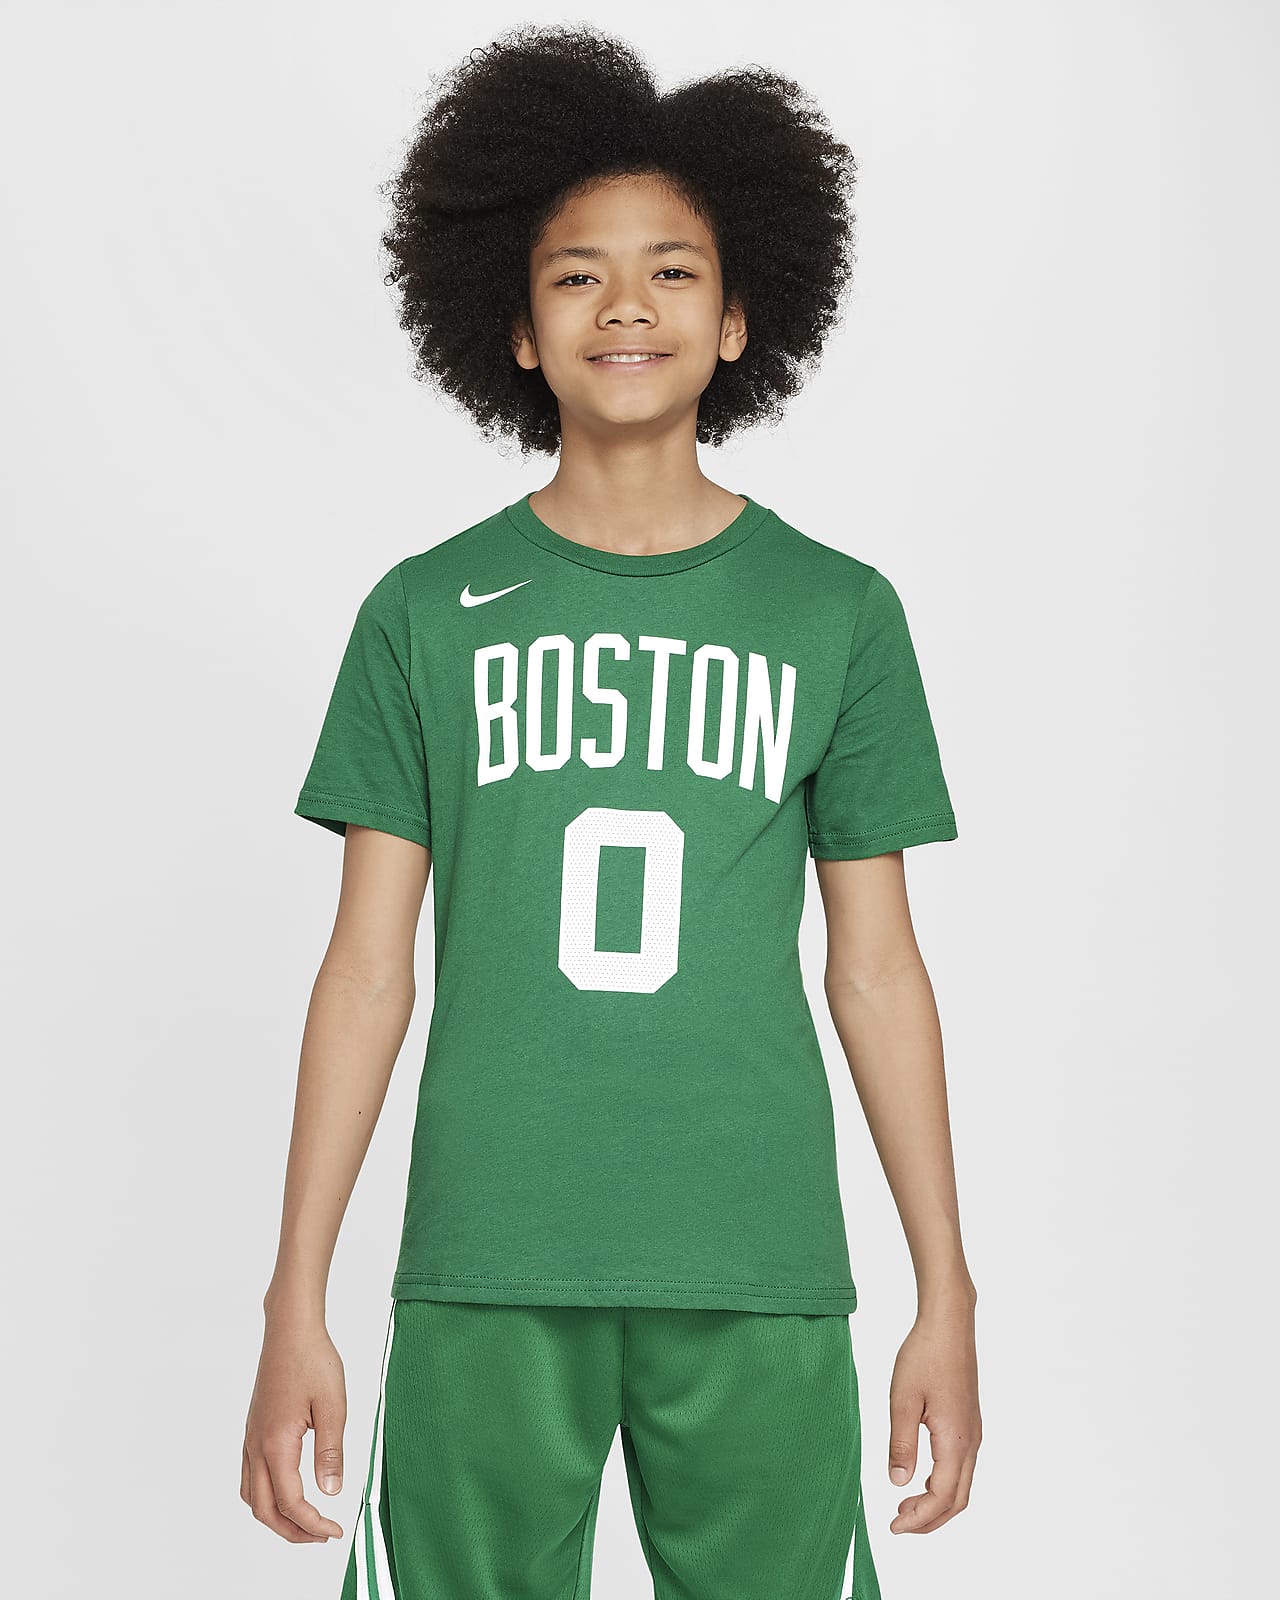 T-Shirt Nike NBA Jayson Tatum Μπόστον Σέλτικς για μεγάλα παιδιά